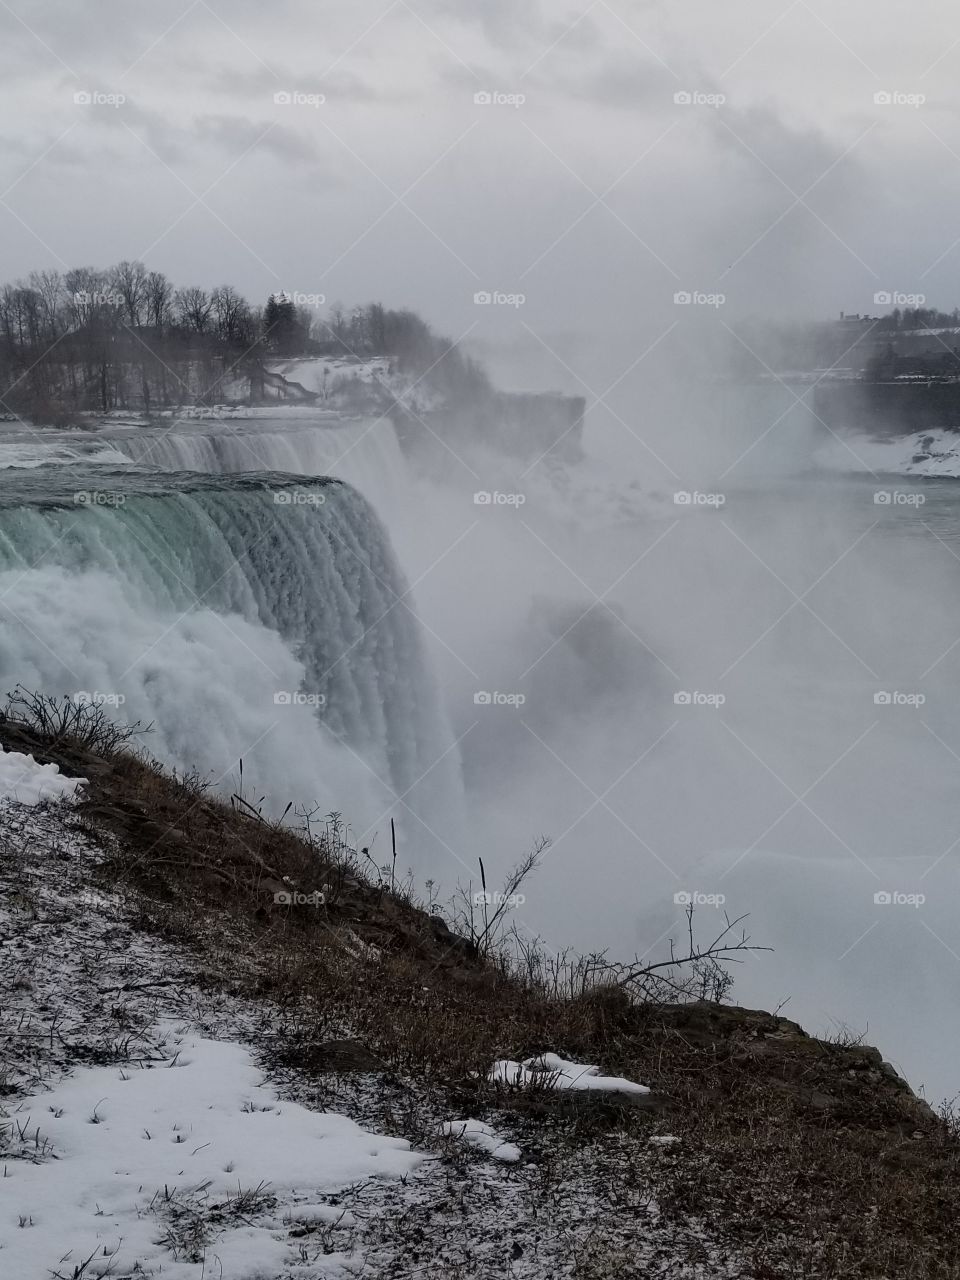 Niagara Falls in early spring